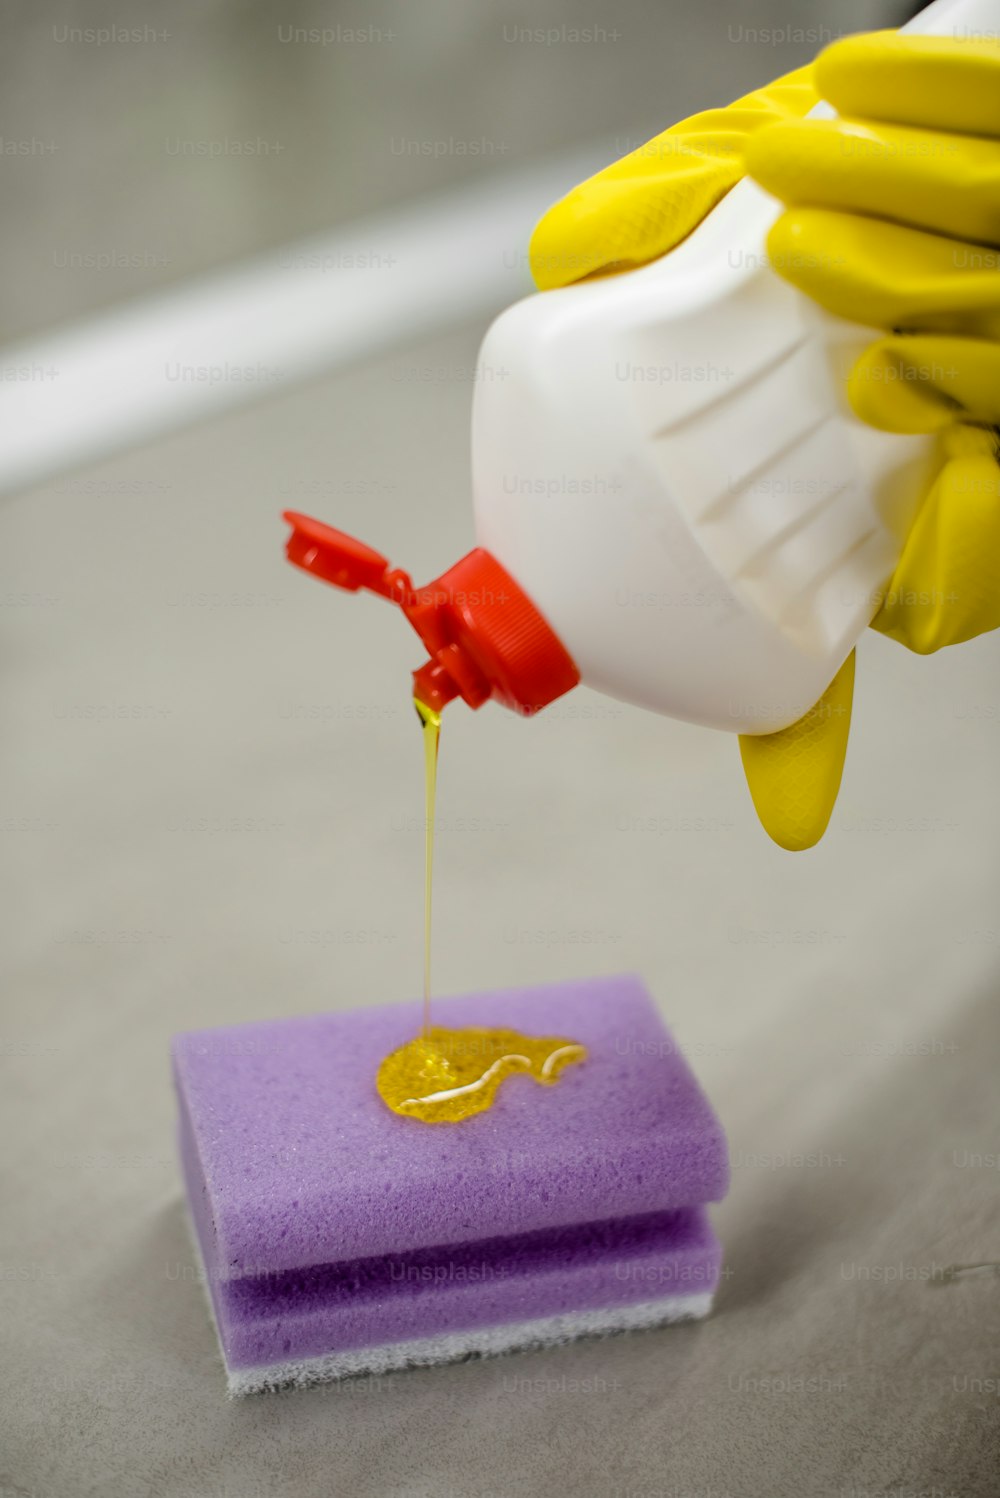 Eine Person mit gelben Handschuhen gießt gelbe Flüssigkeit auf einen Schwamm